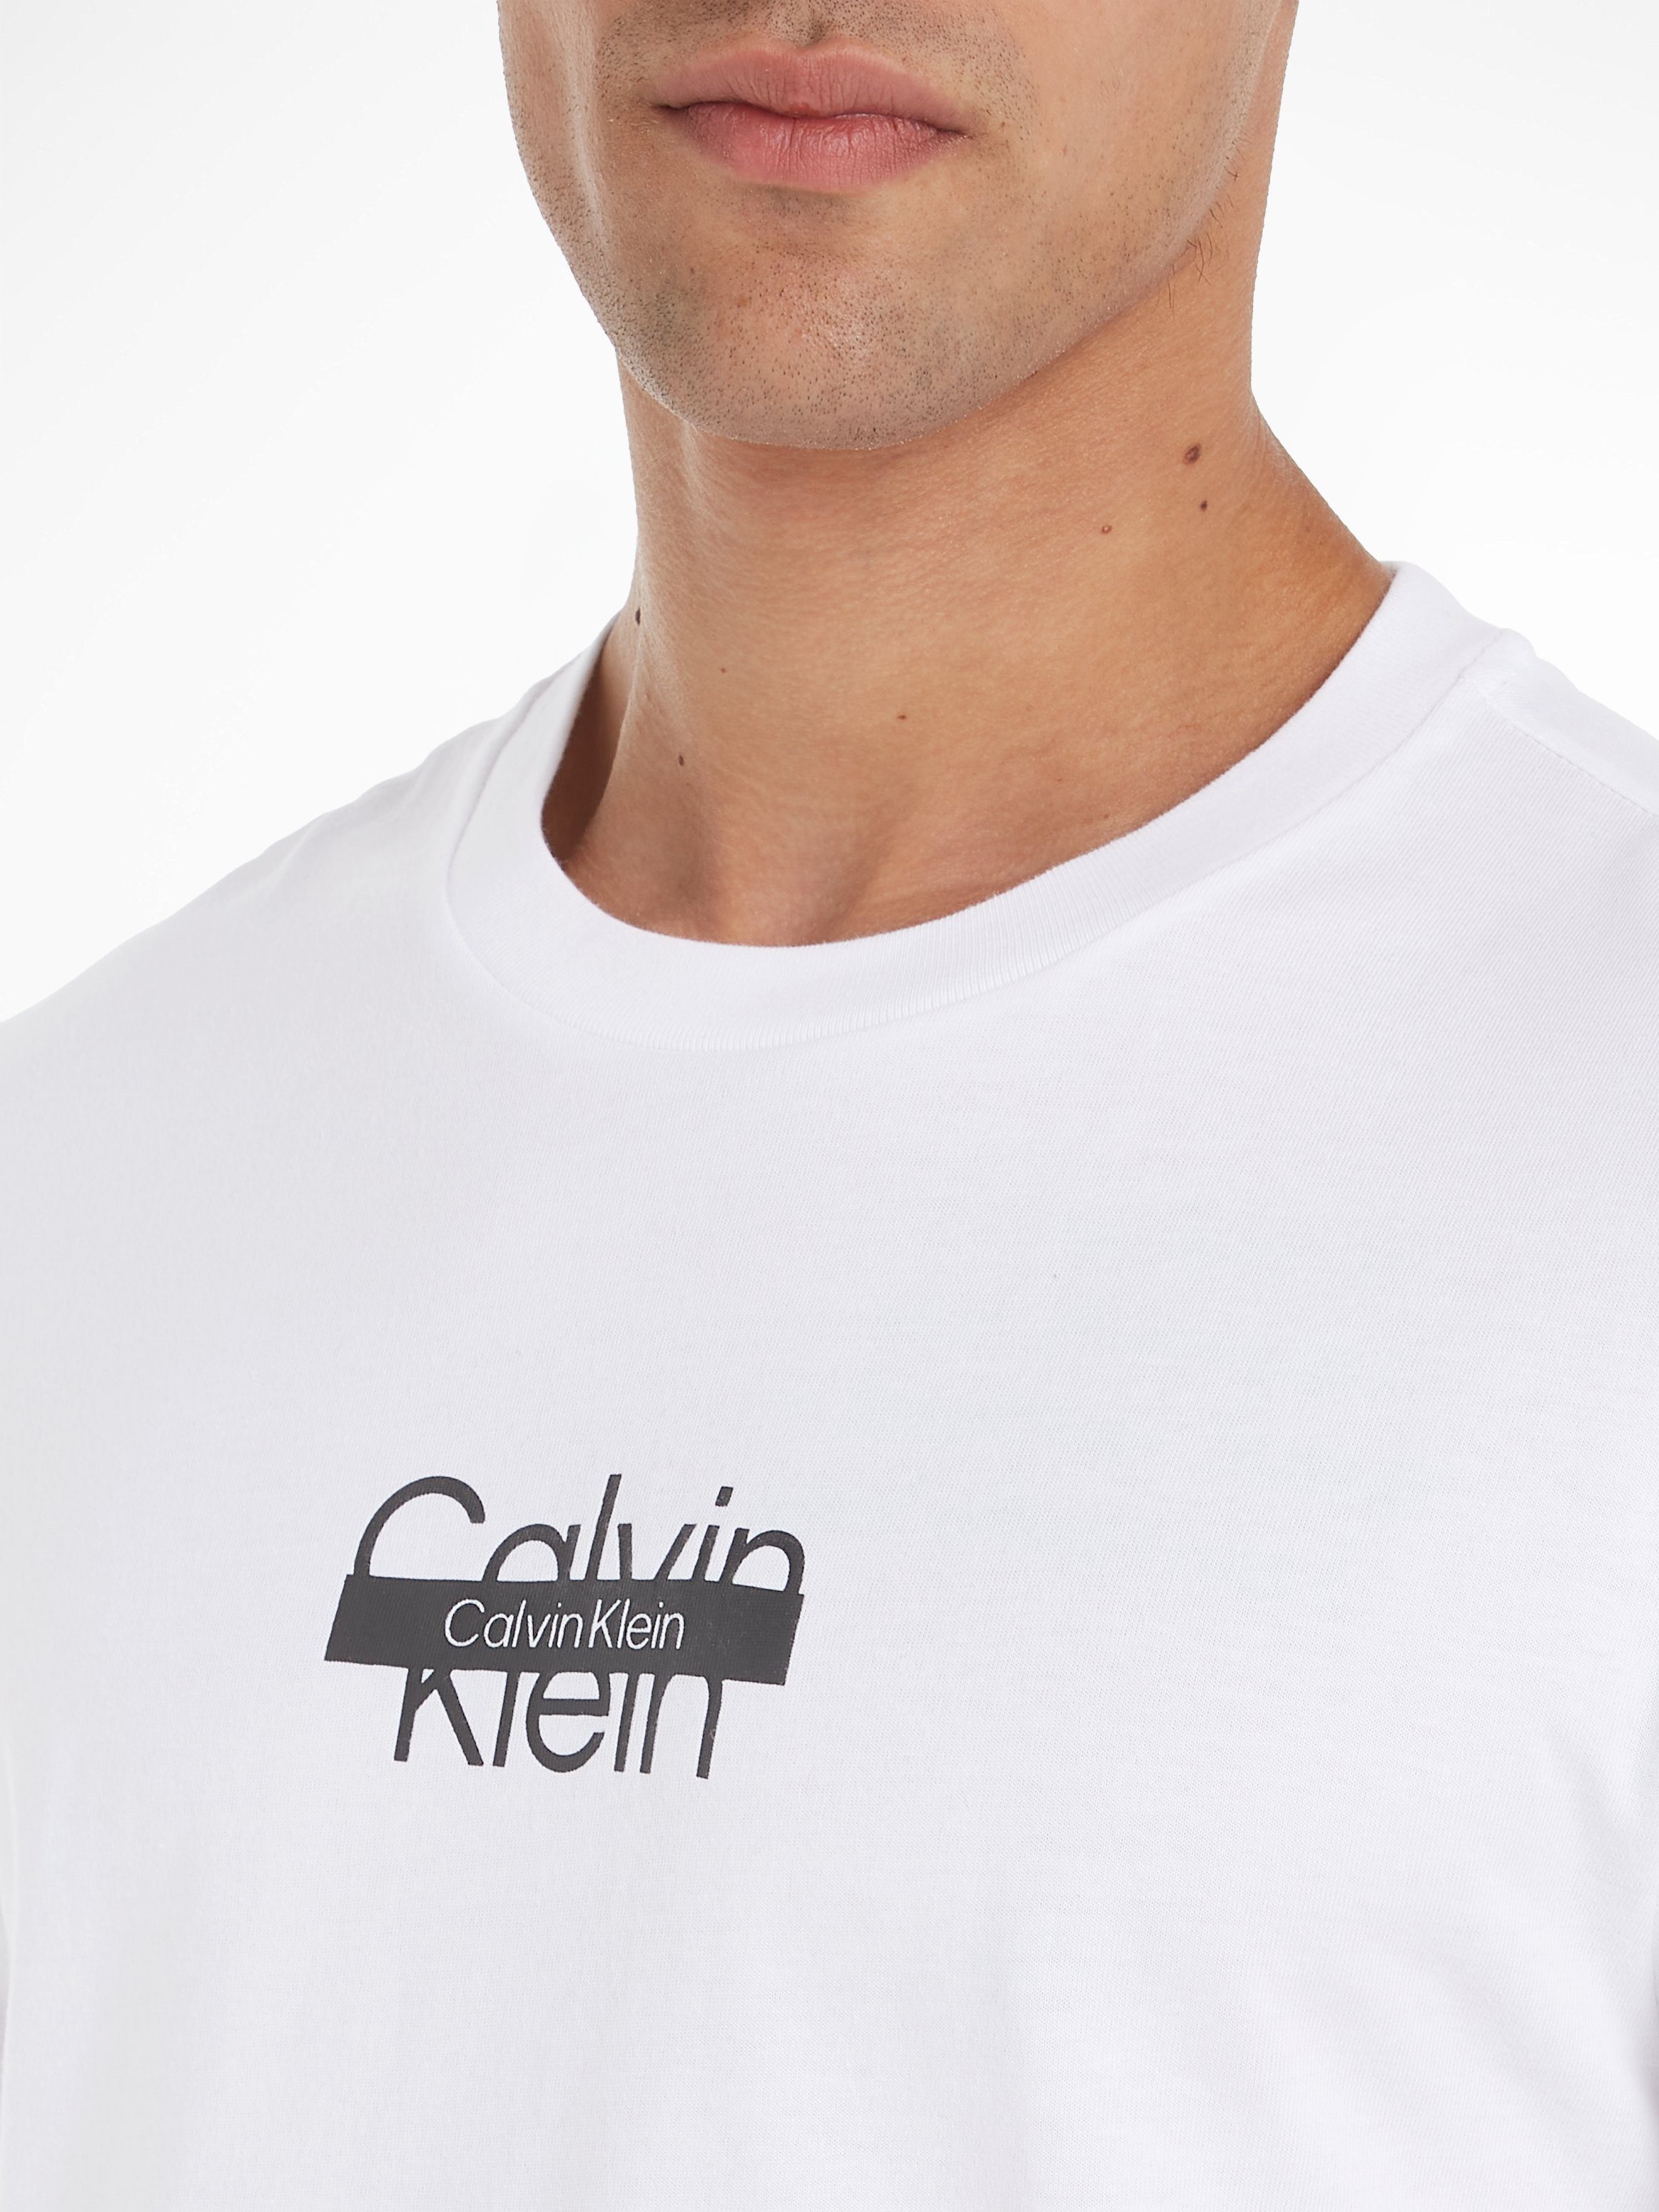 Calvin Klein T-Shirt Bright LOGO CUT White T-SHIRT THROUGH